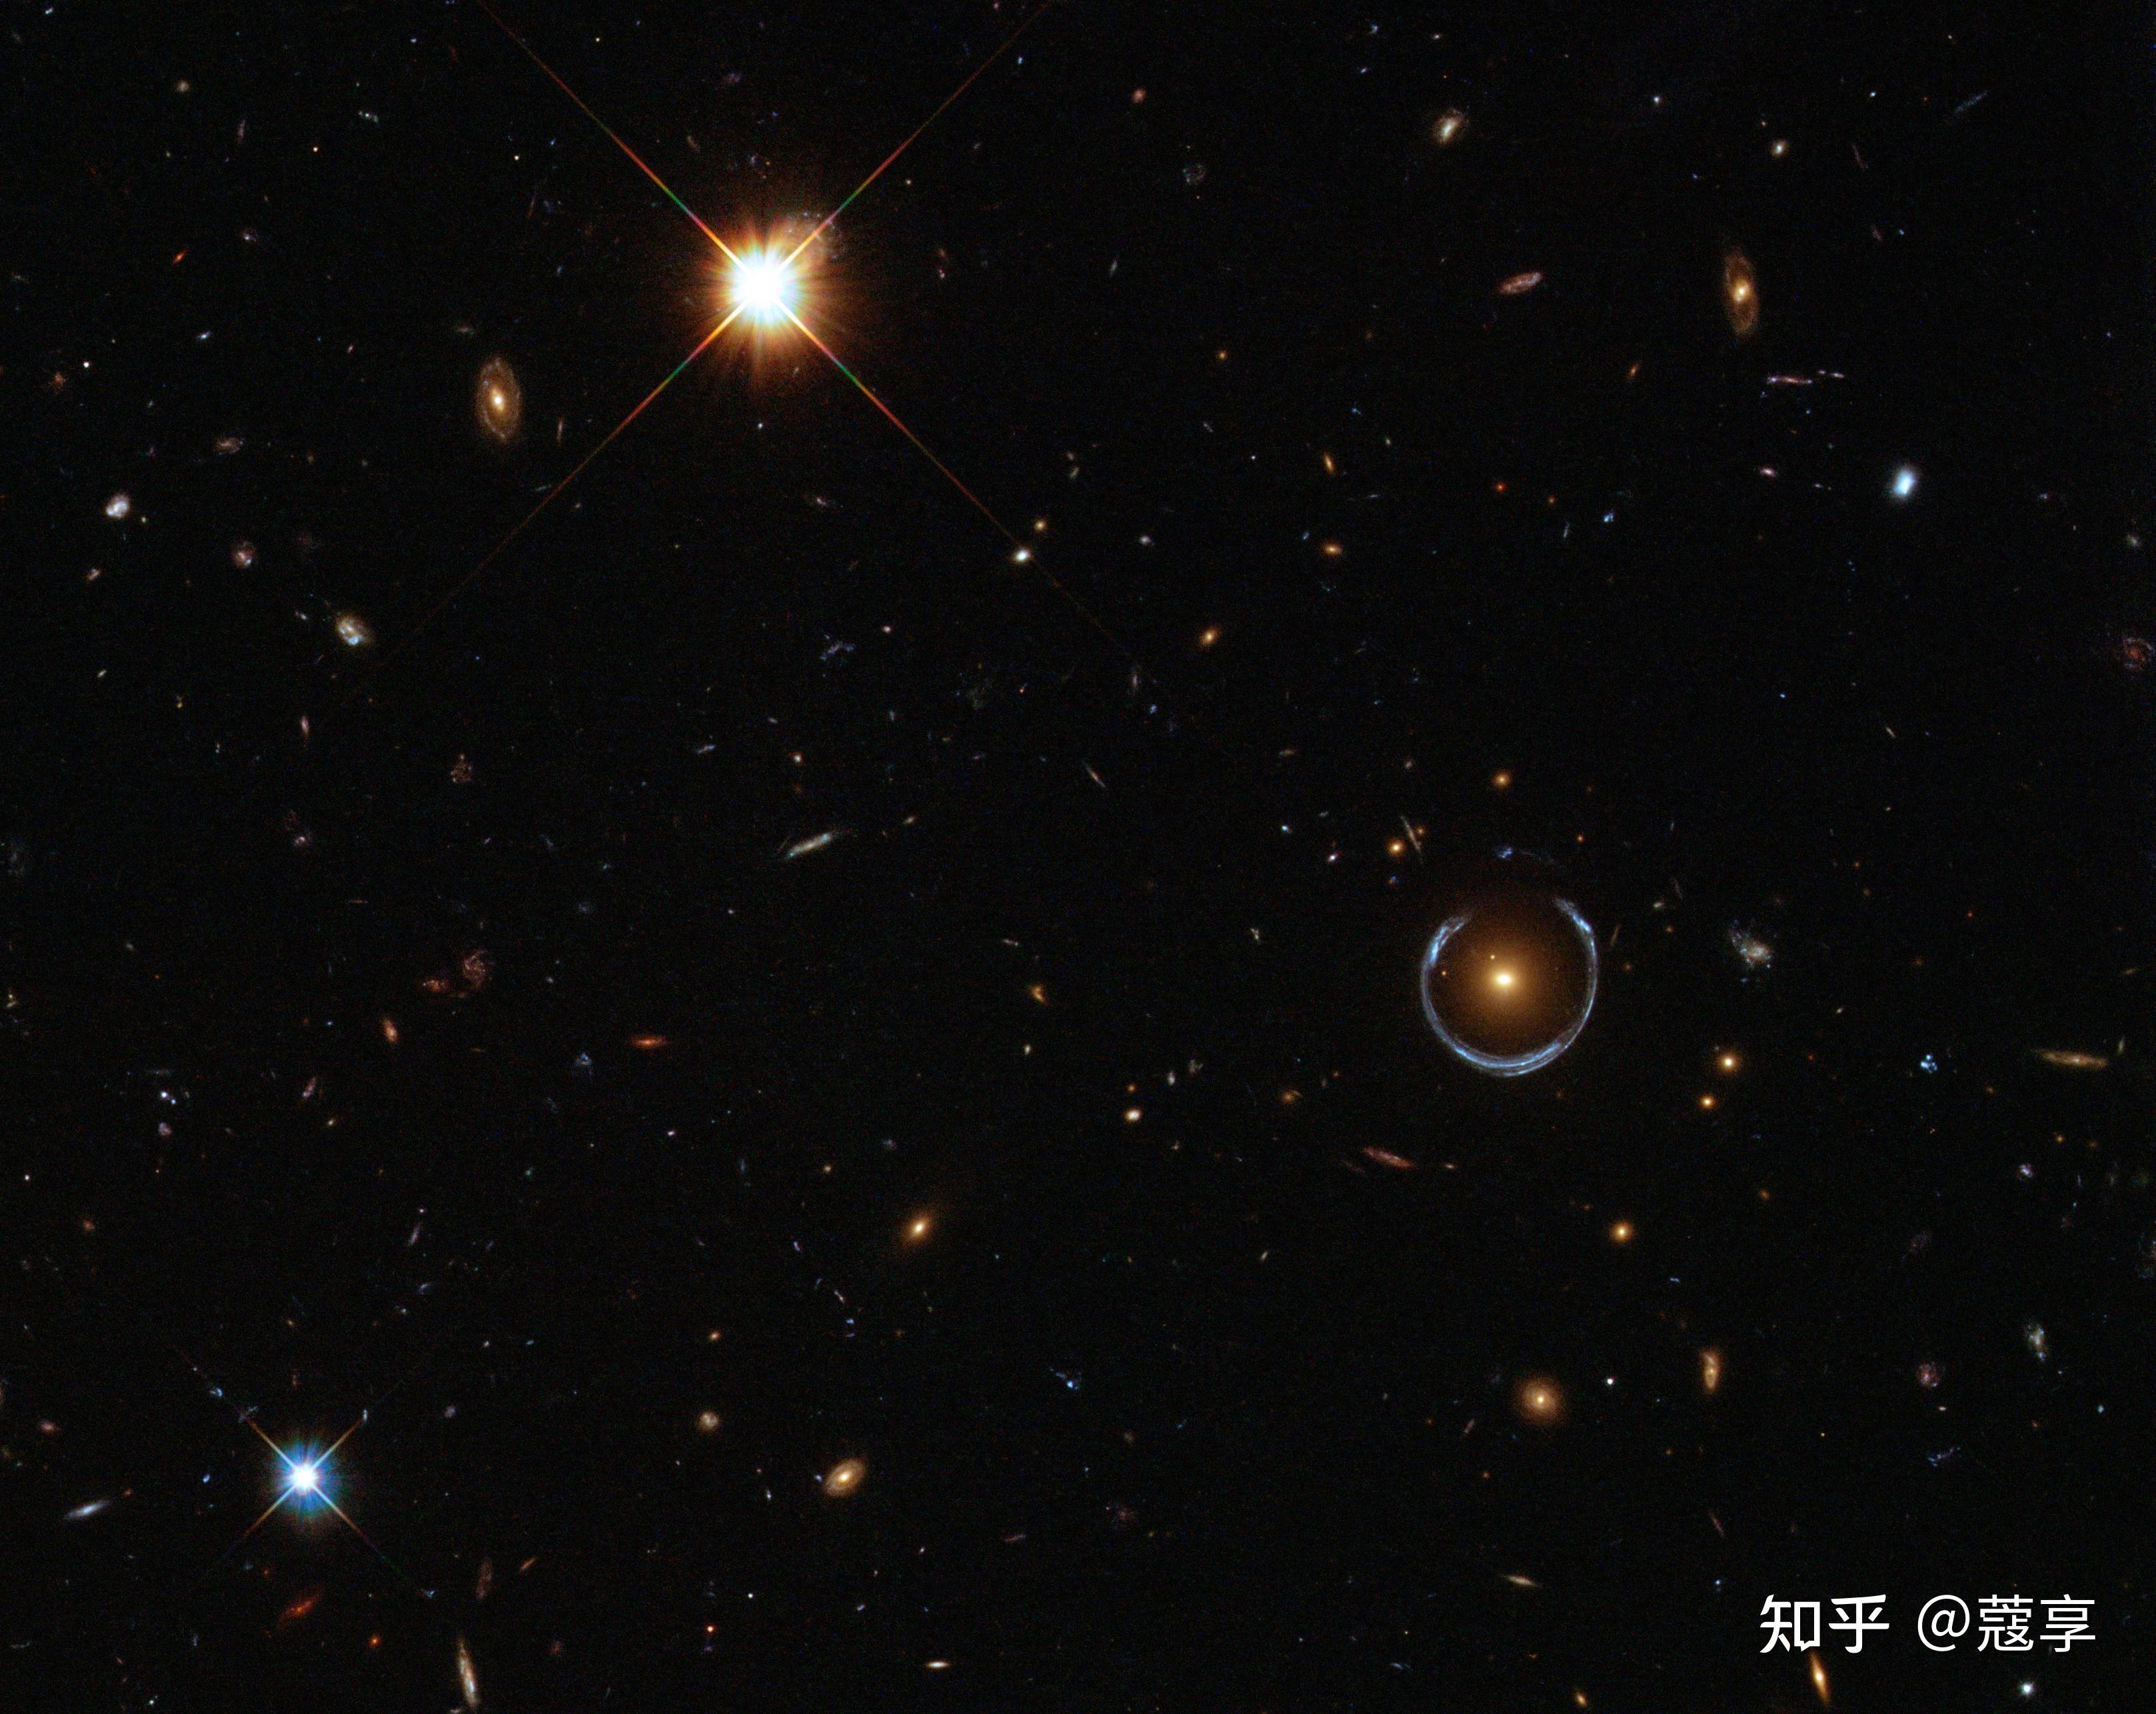 【星系壁纸】宇宙摄影师：NASA / ESA哈勃太空望远镜所拍下的高清星系壁纸 - 哔哩哔哩